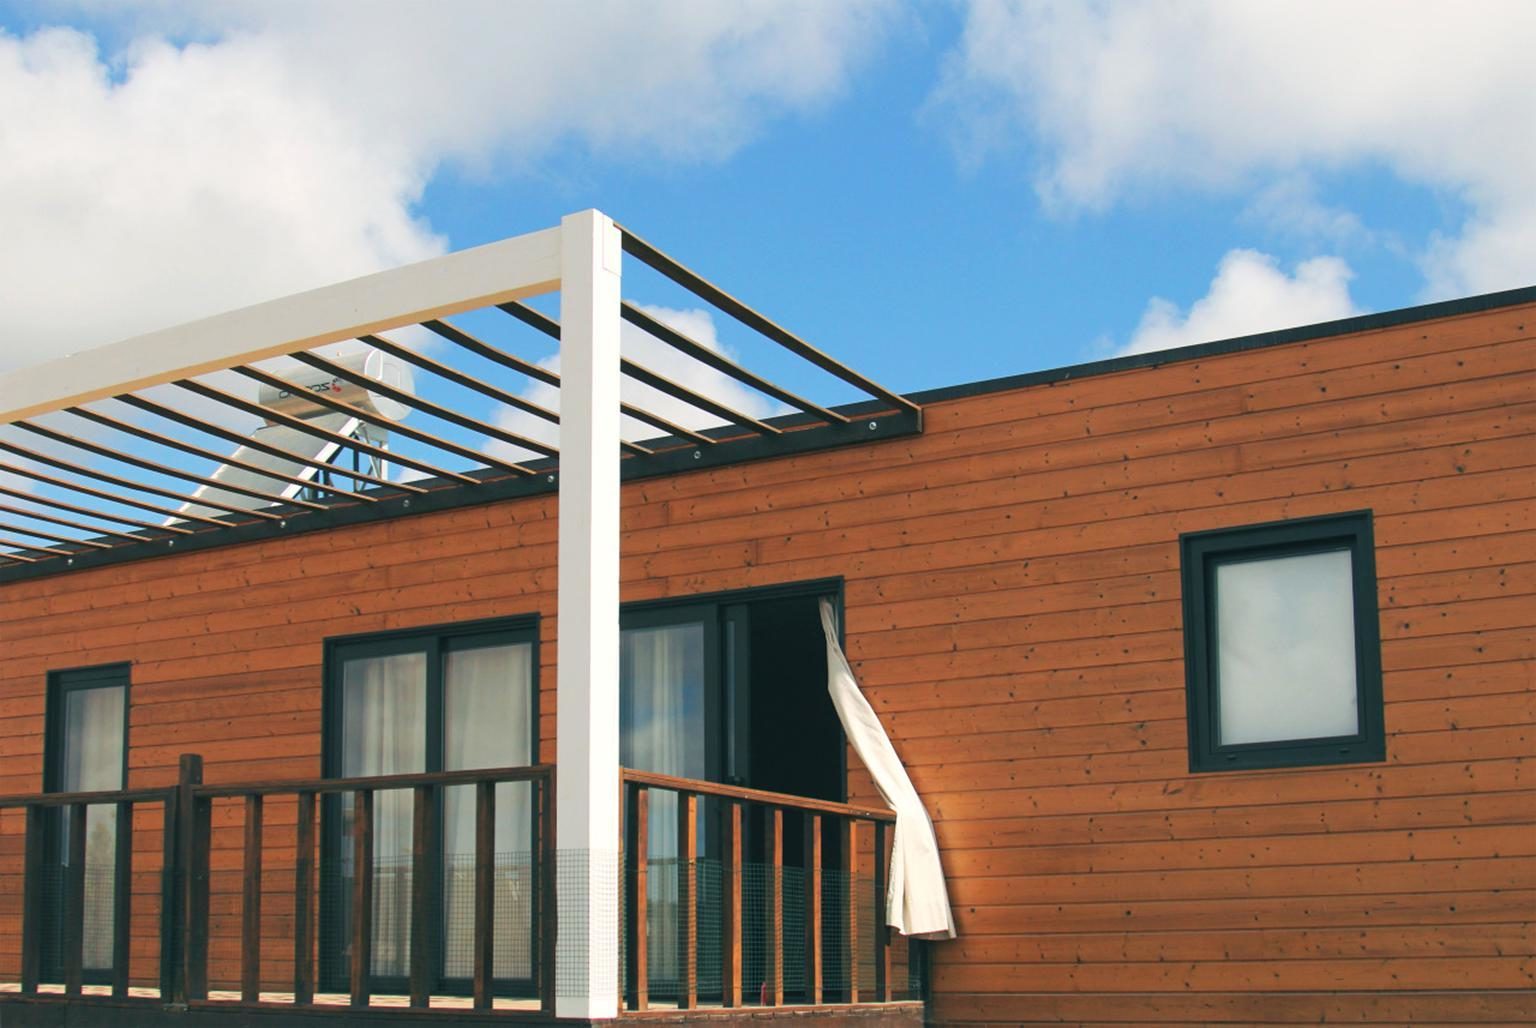 Gambar gratis rumah  arsitektur jendela  rumah  atap  